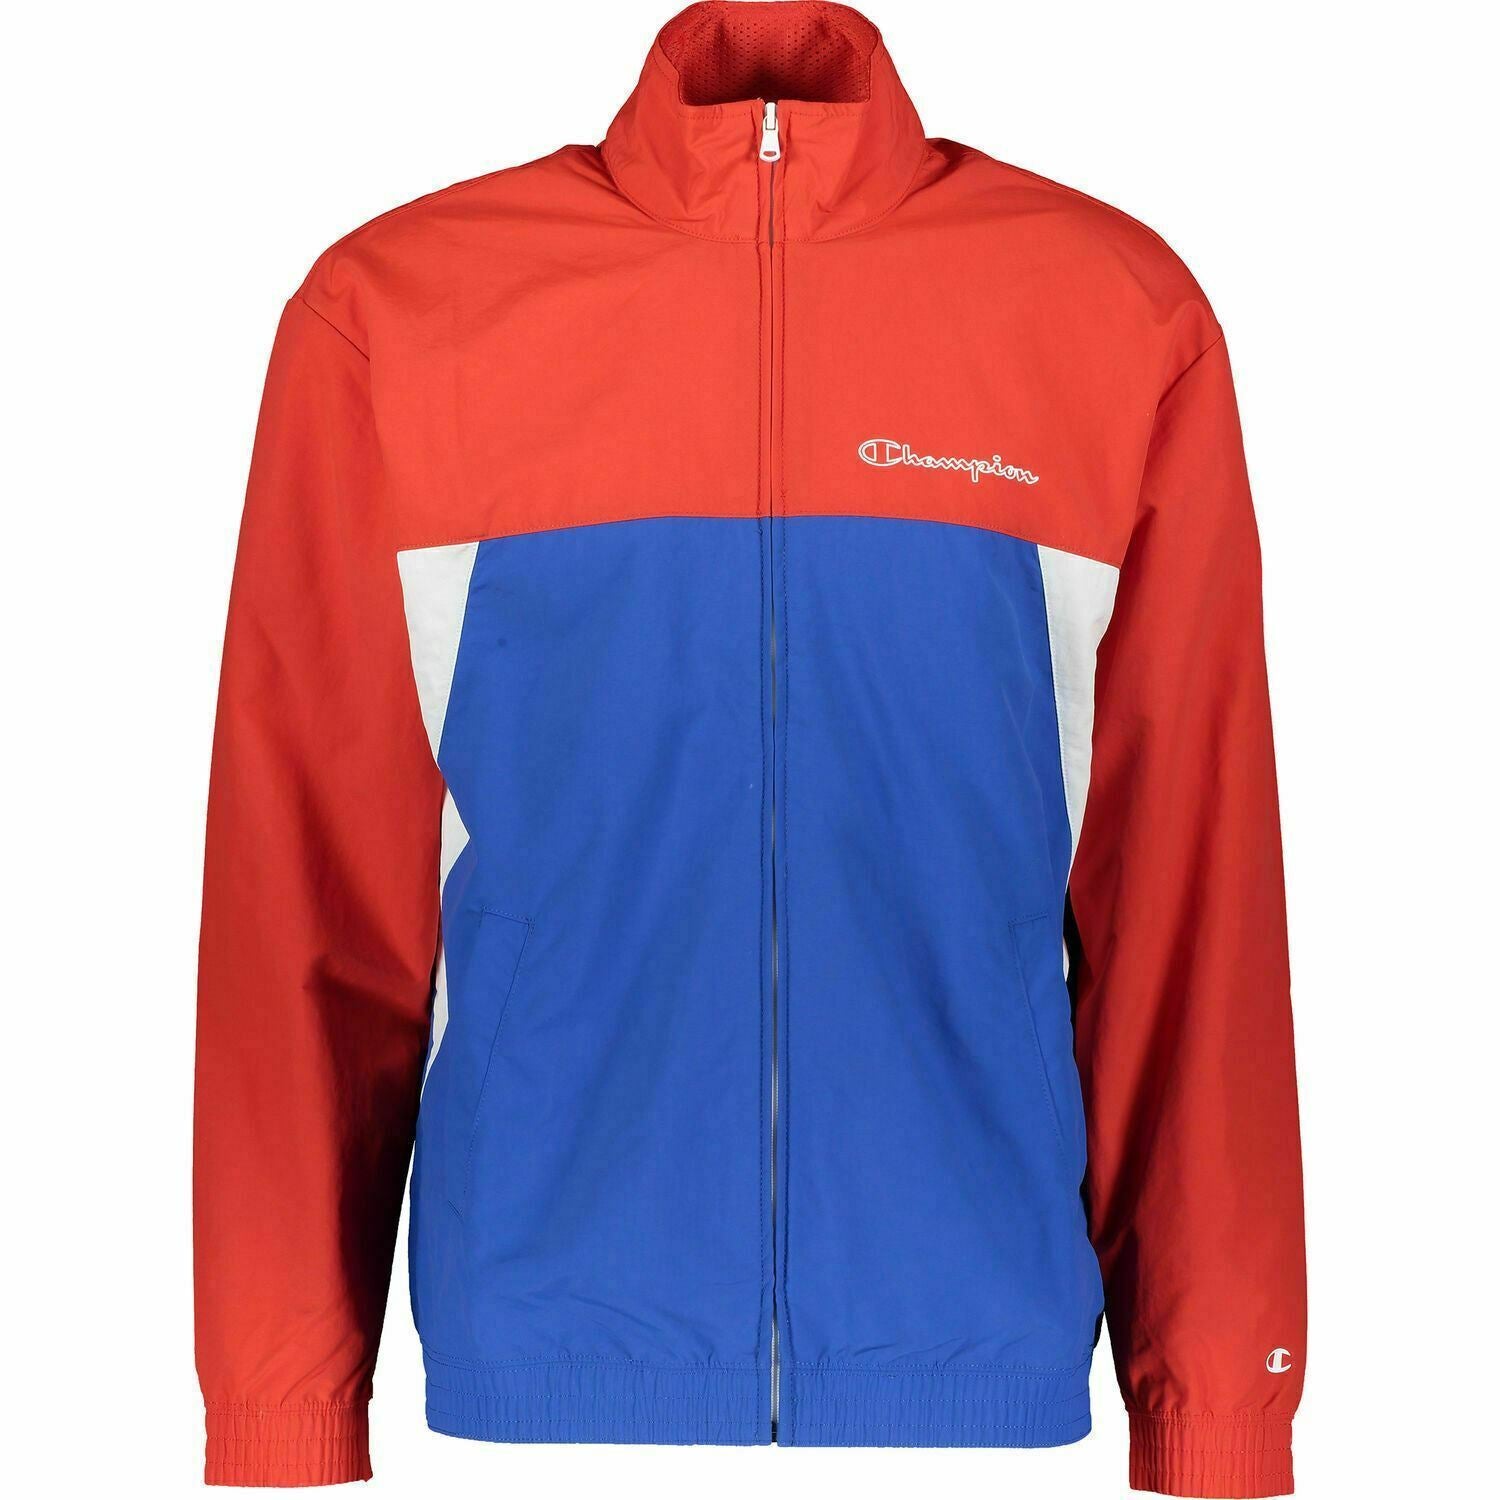 CHAMPION Men's Zipped Colour Block Jacket, Red & Blue, size M